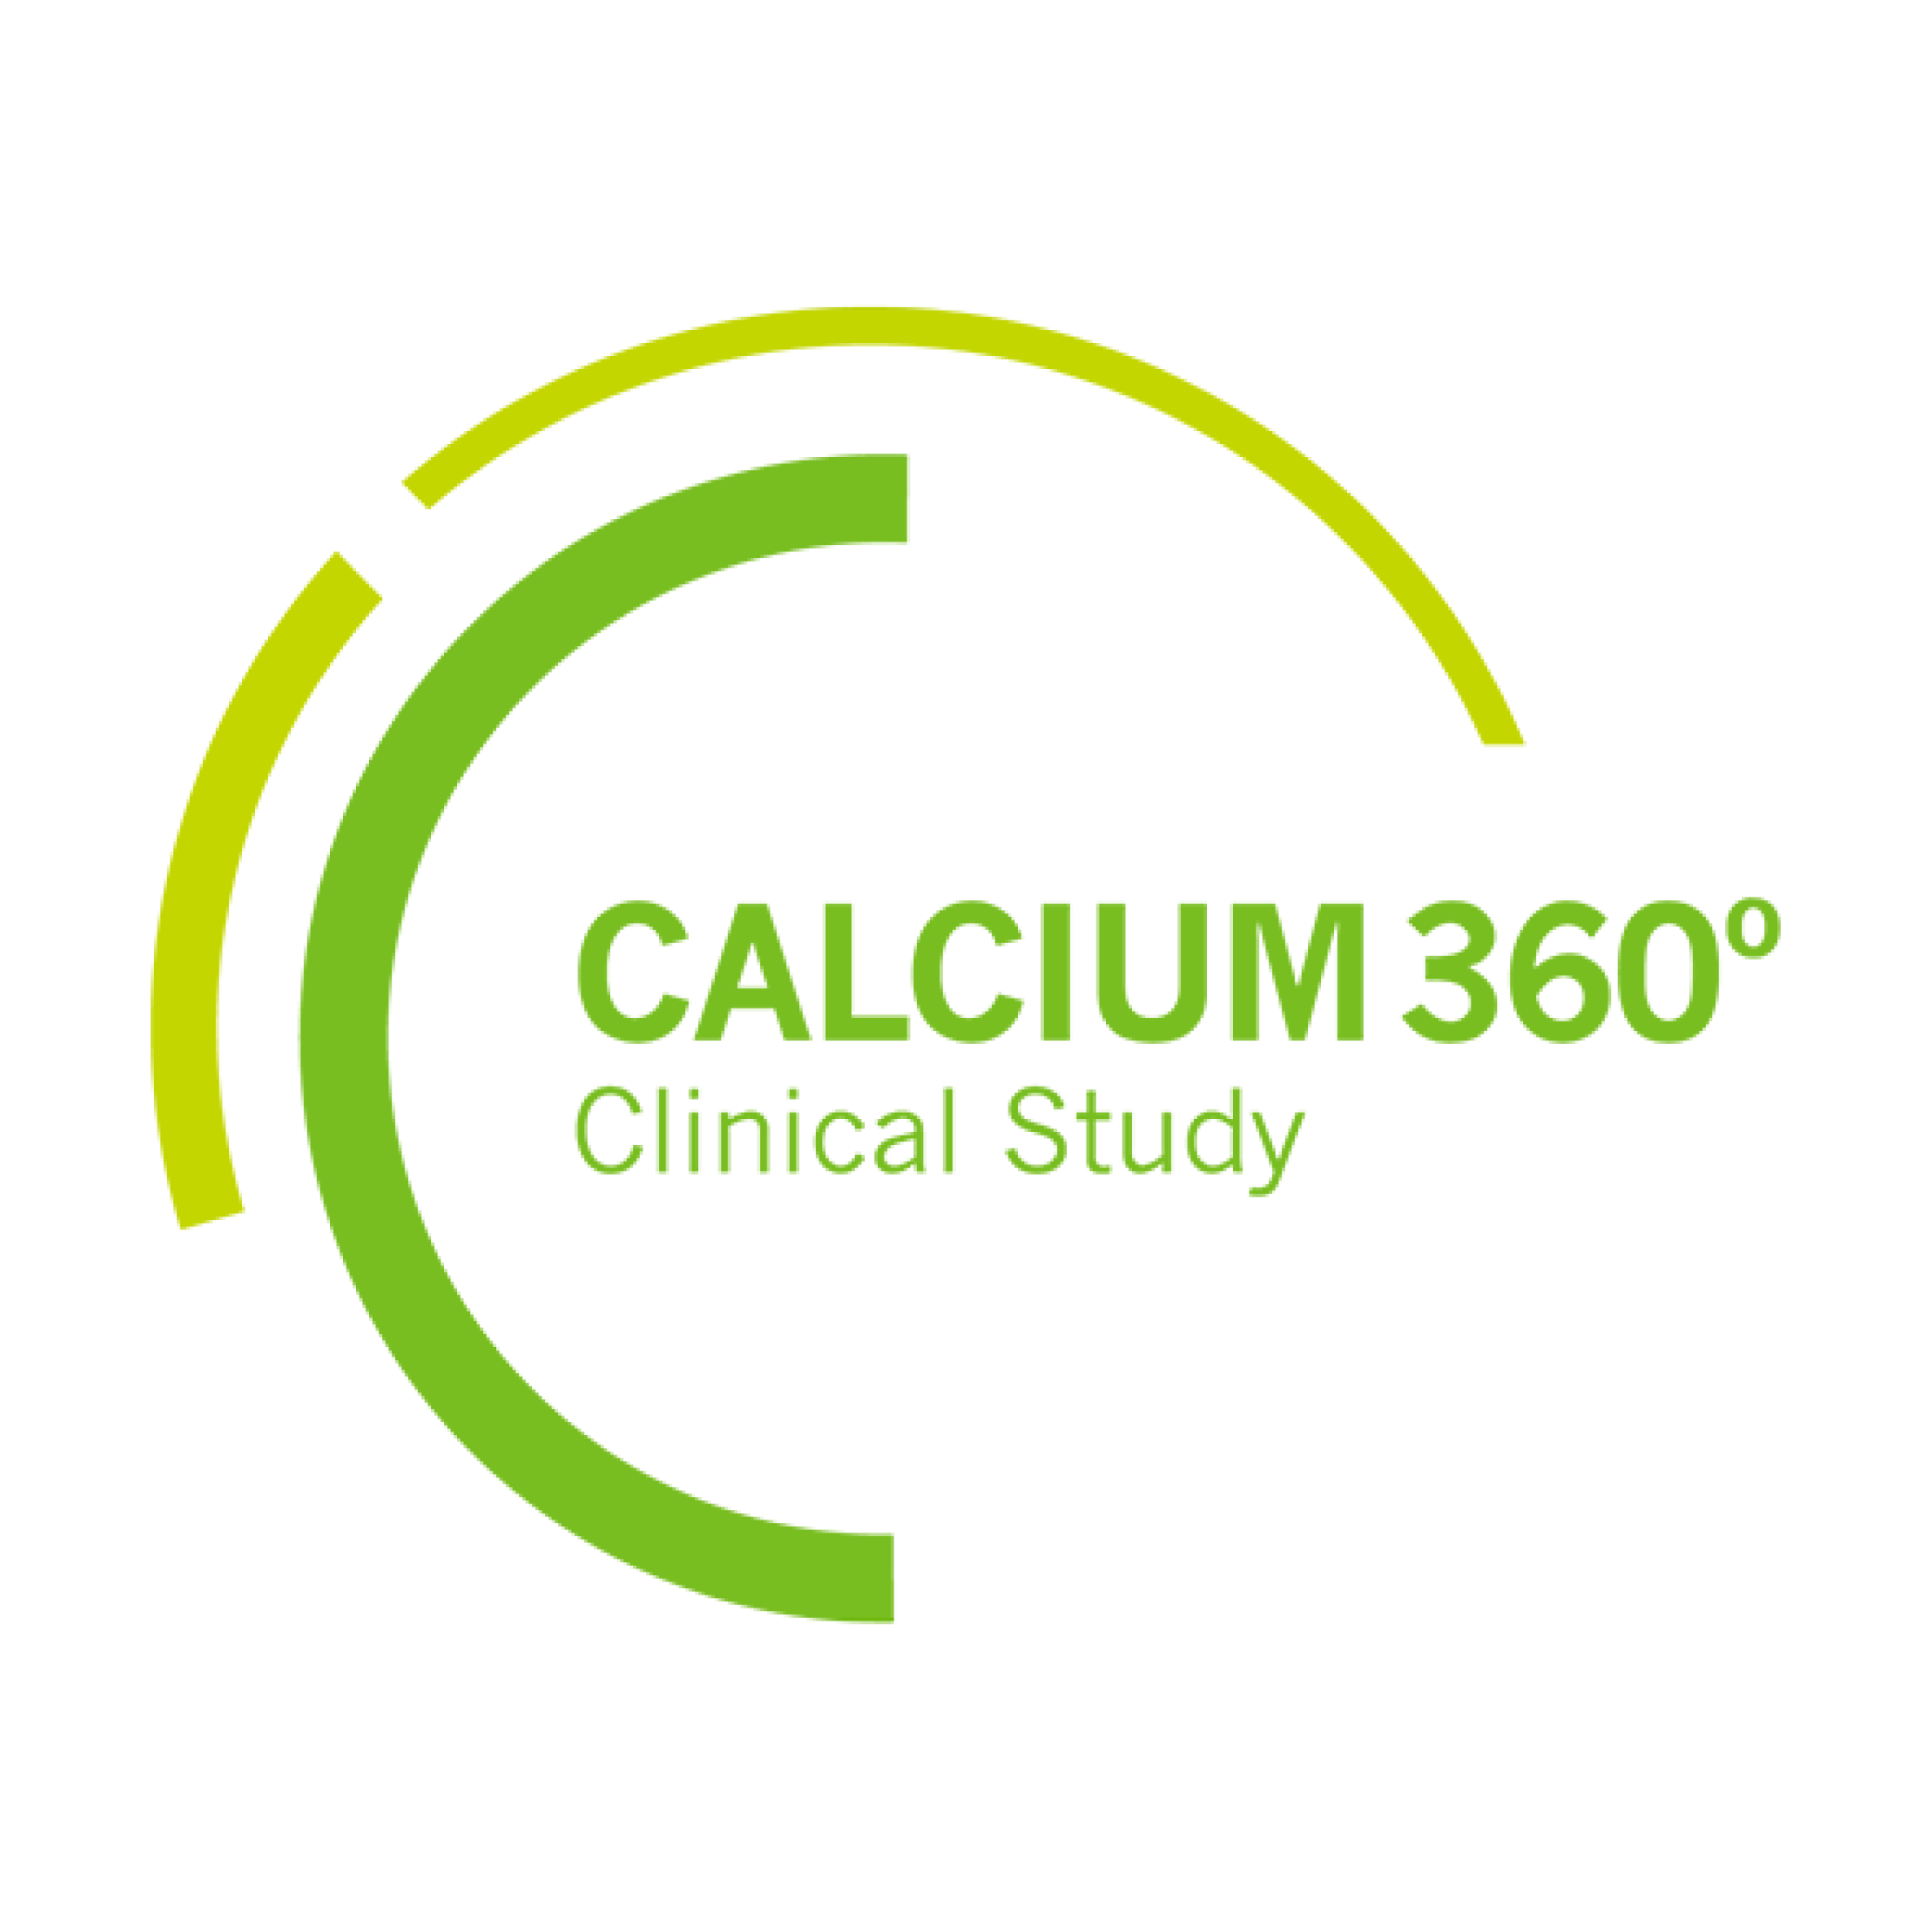 Calcium 360 clinical study